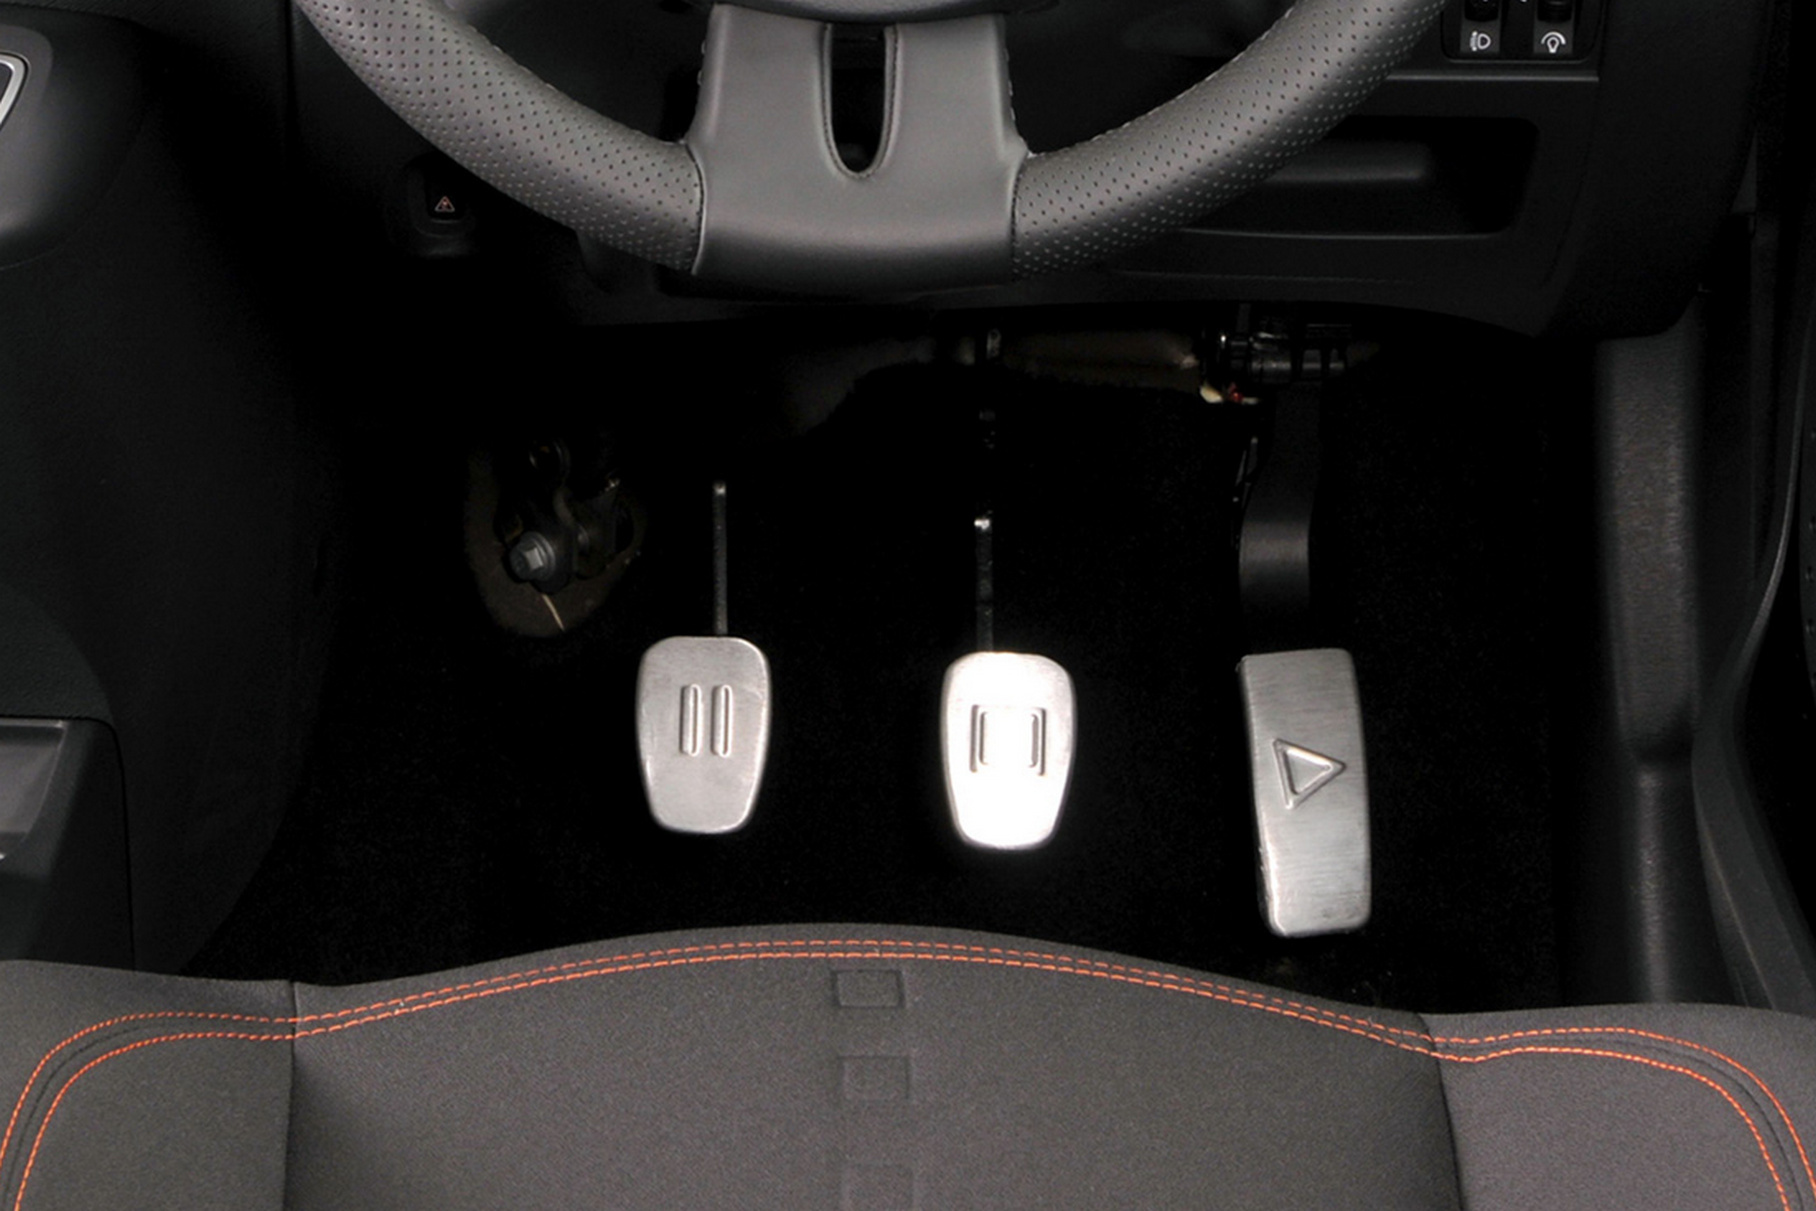 Tри педали на «горячем хэтчбеке» Twingo RS обозначены пиктограммами «Pause», «Stop» и «Play»